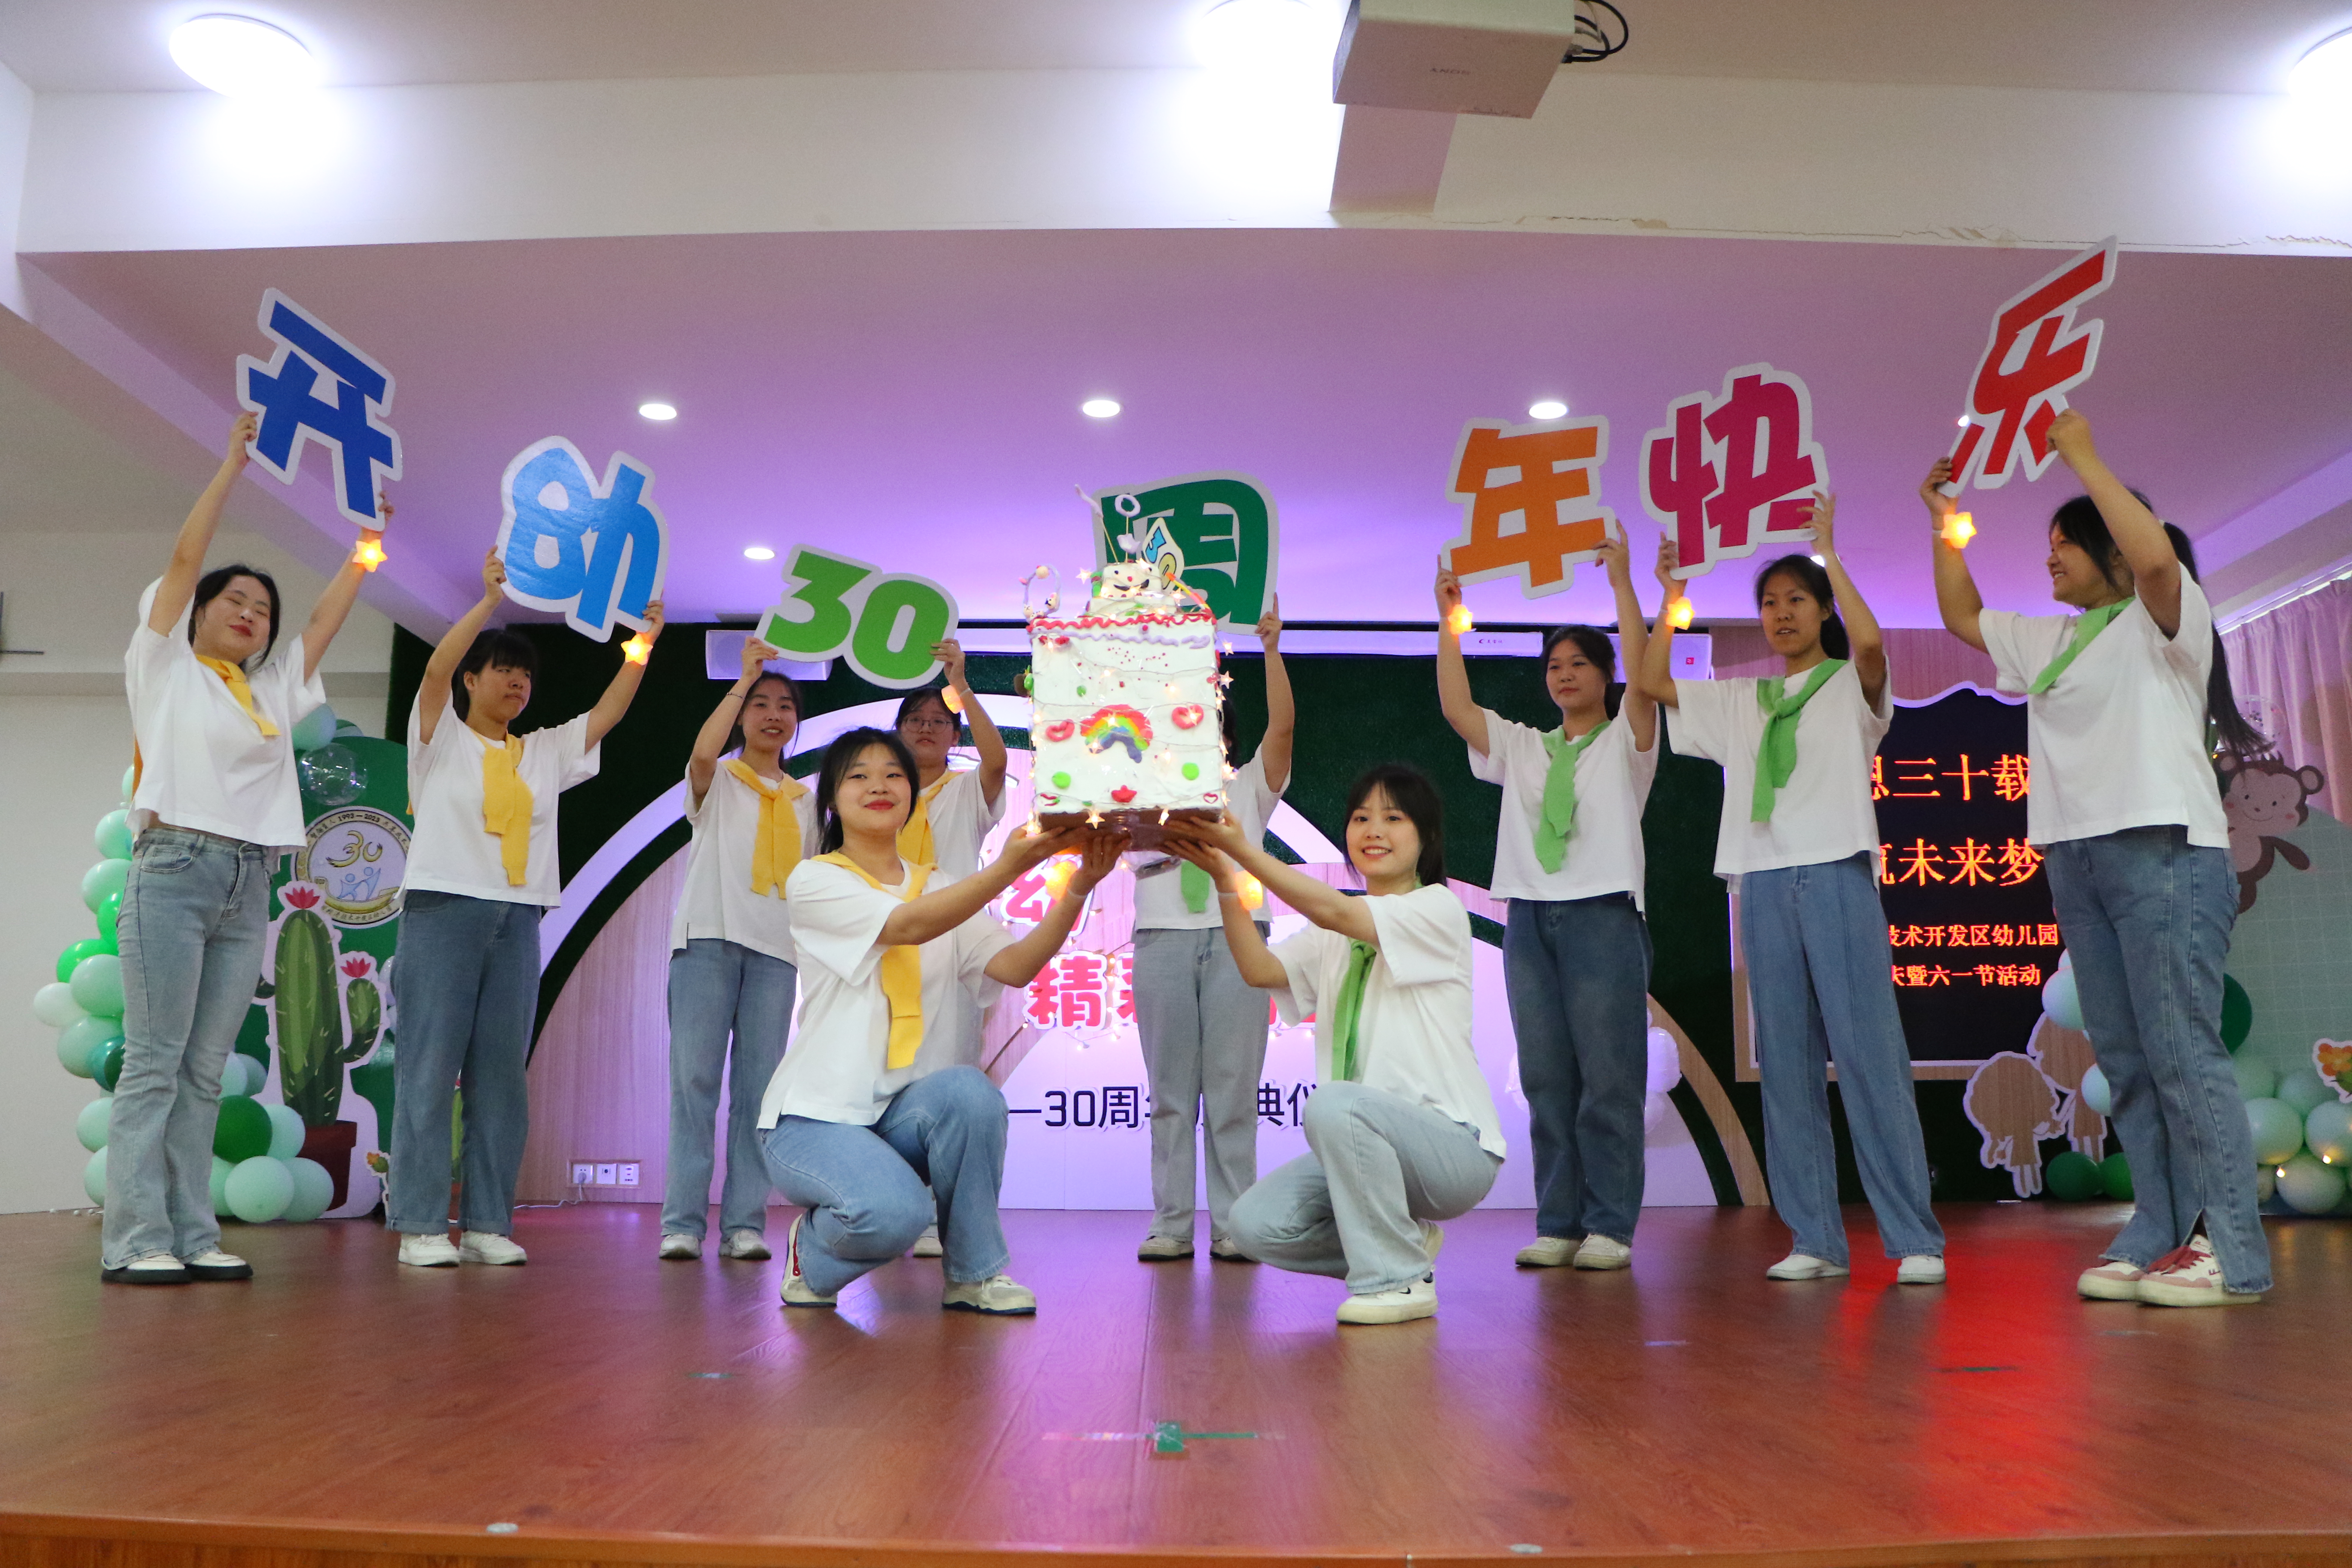 福州经济技术开发区幼儿园30周年园庆